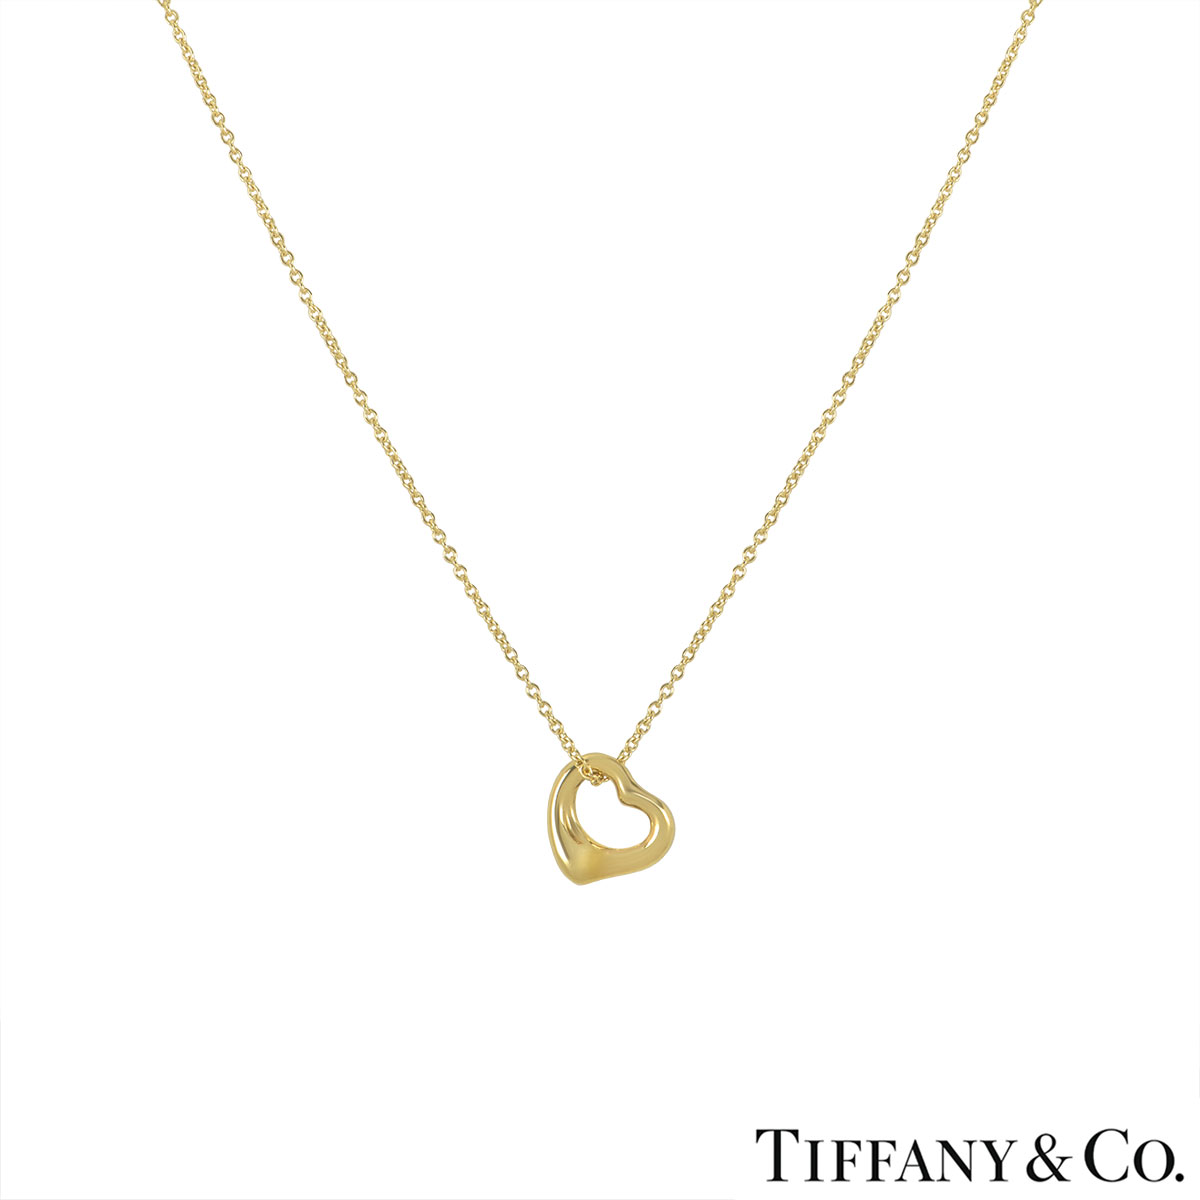 Tiffany & Co. Yellow Gold Elsa Peretti Necklace | Rich Diamonds